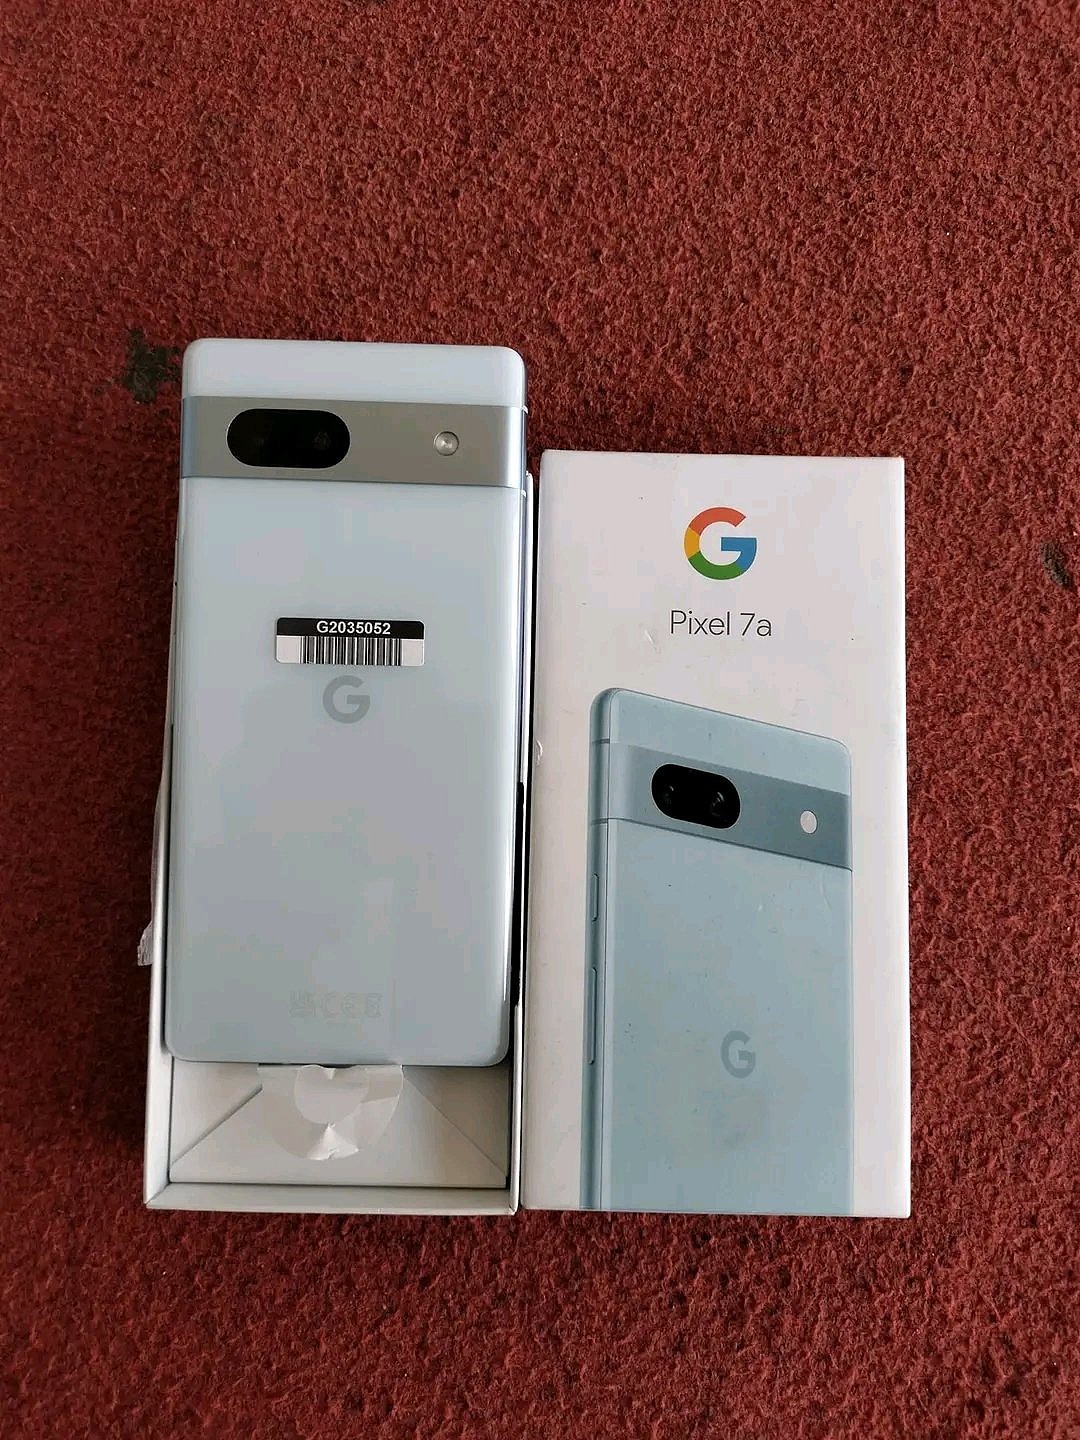 北极蓝和碳灰色谷歌 Pixel 7a 手机照片曝光 - 1